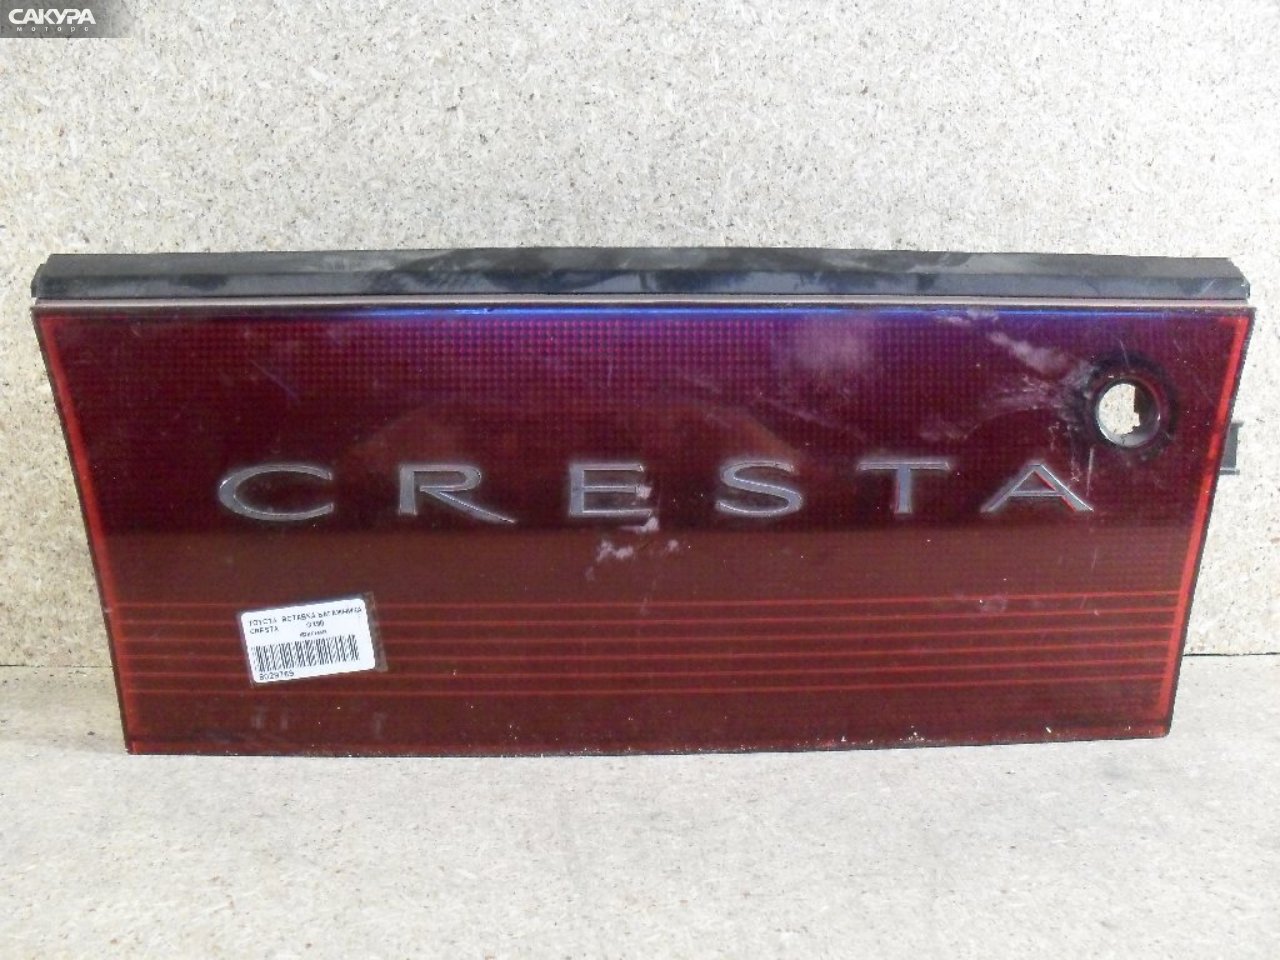 Фонарь вставка багажника Toyota Cresta GX90: купить в Сакура Абакан.